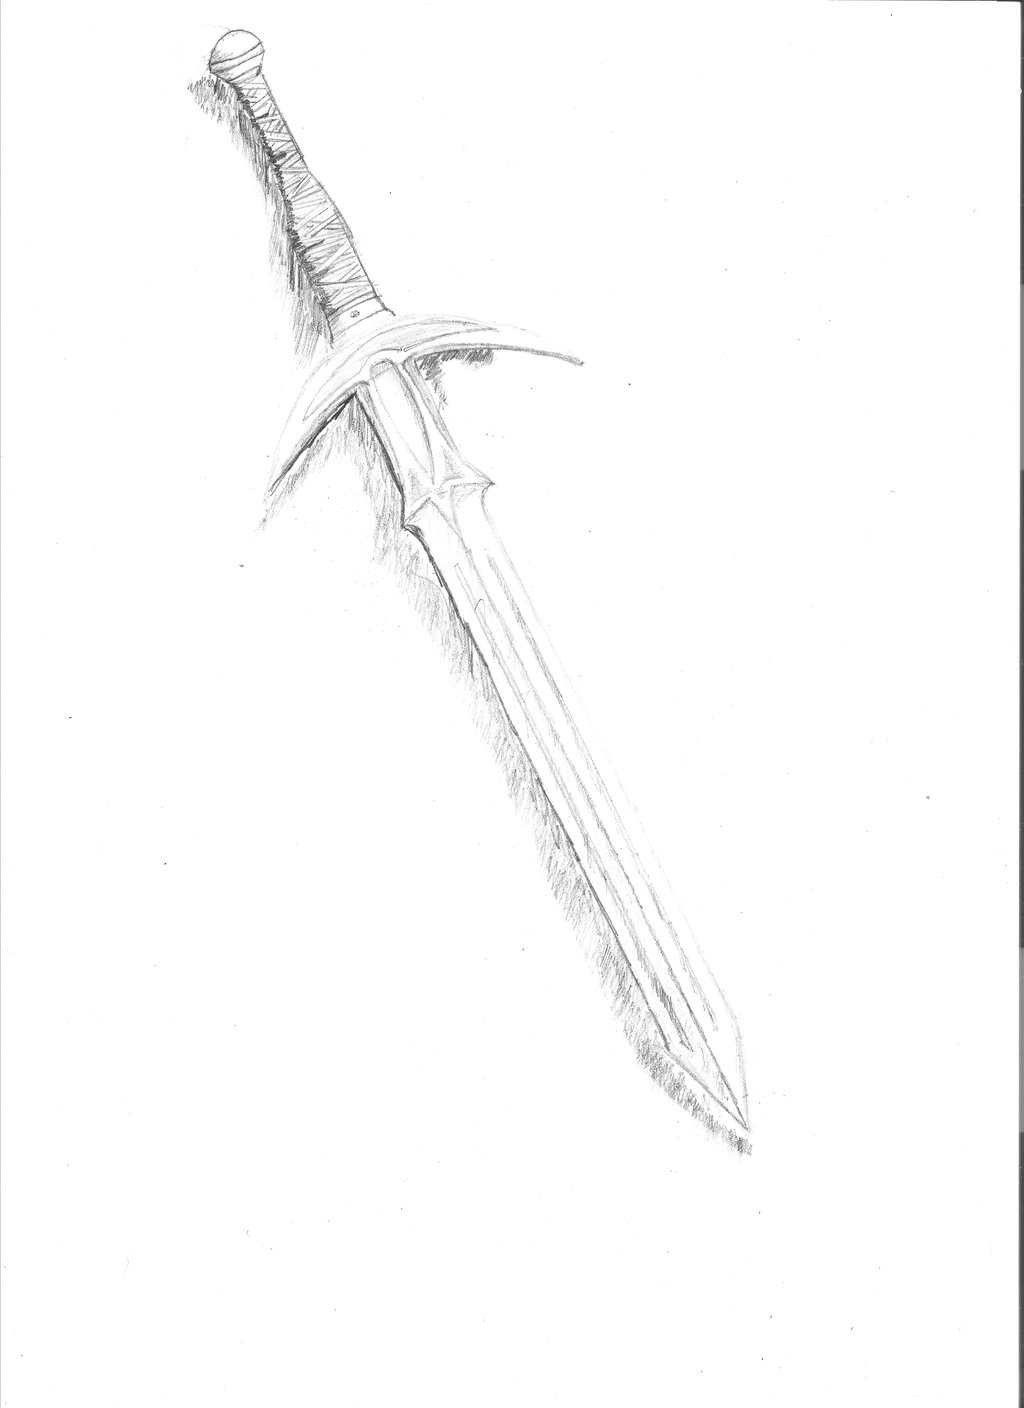 Katana Sword Drawing at GetDrawings | Free download